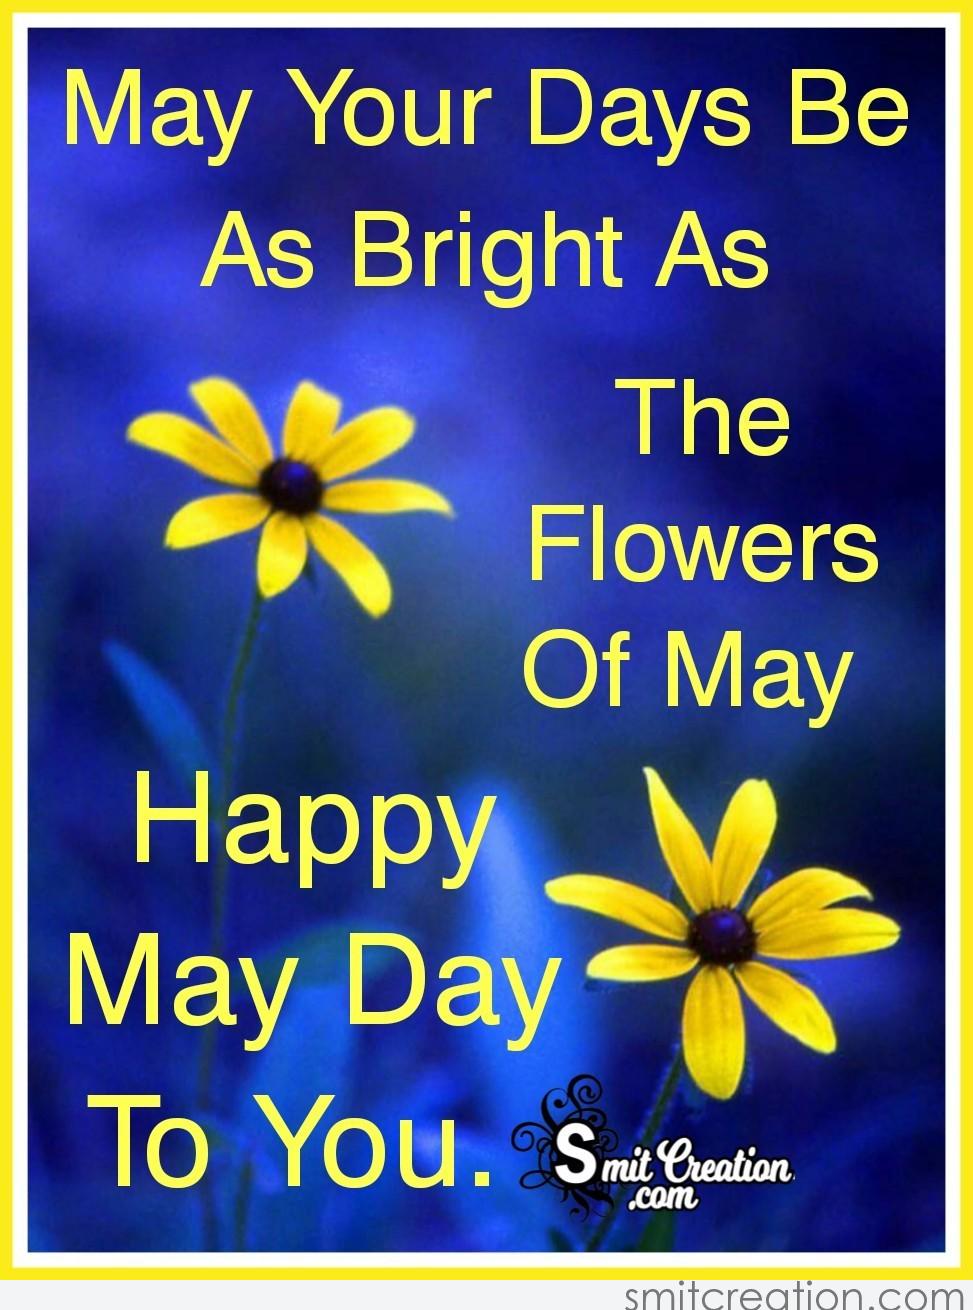 Happy May Day To You - SmitCreation.com